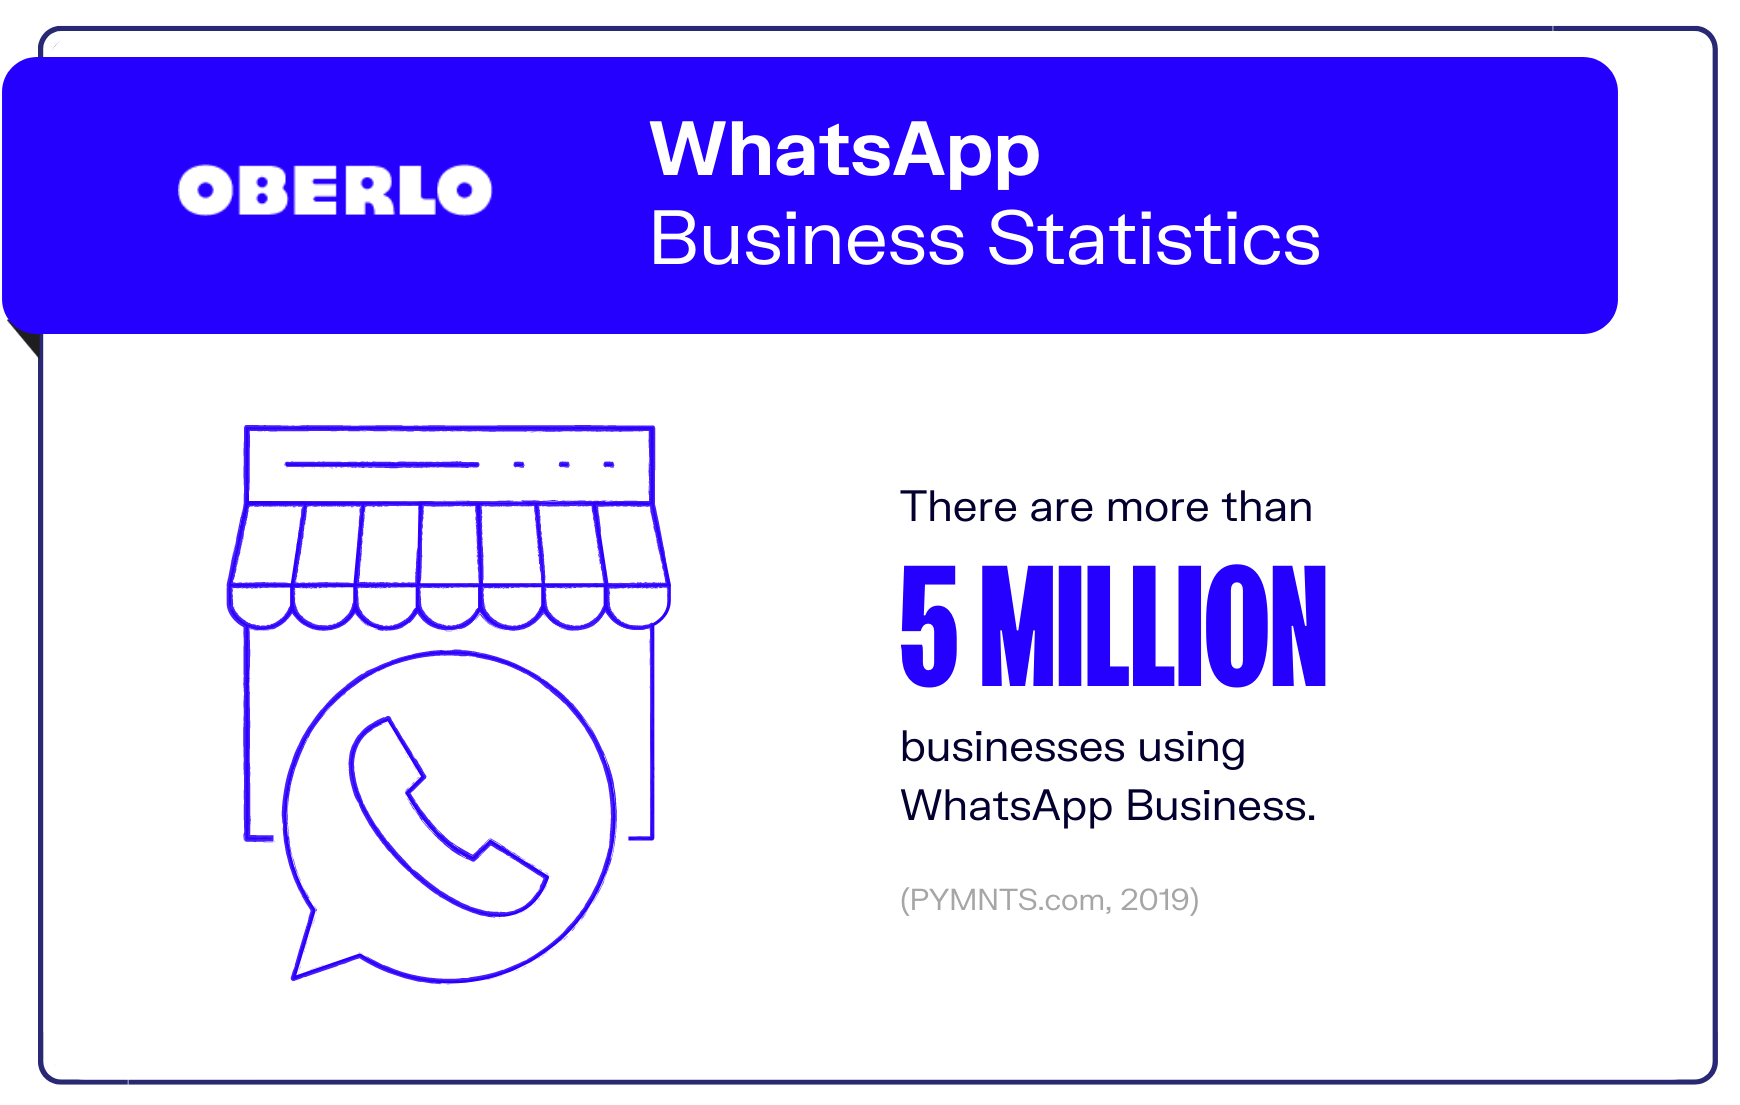 whatsapp statistics graphic9